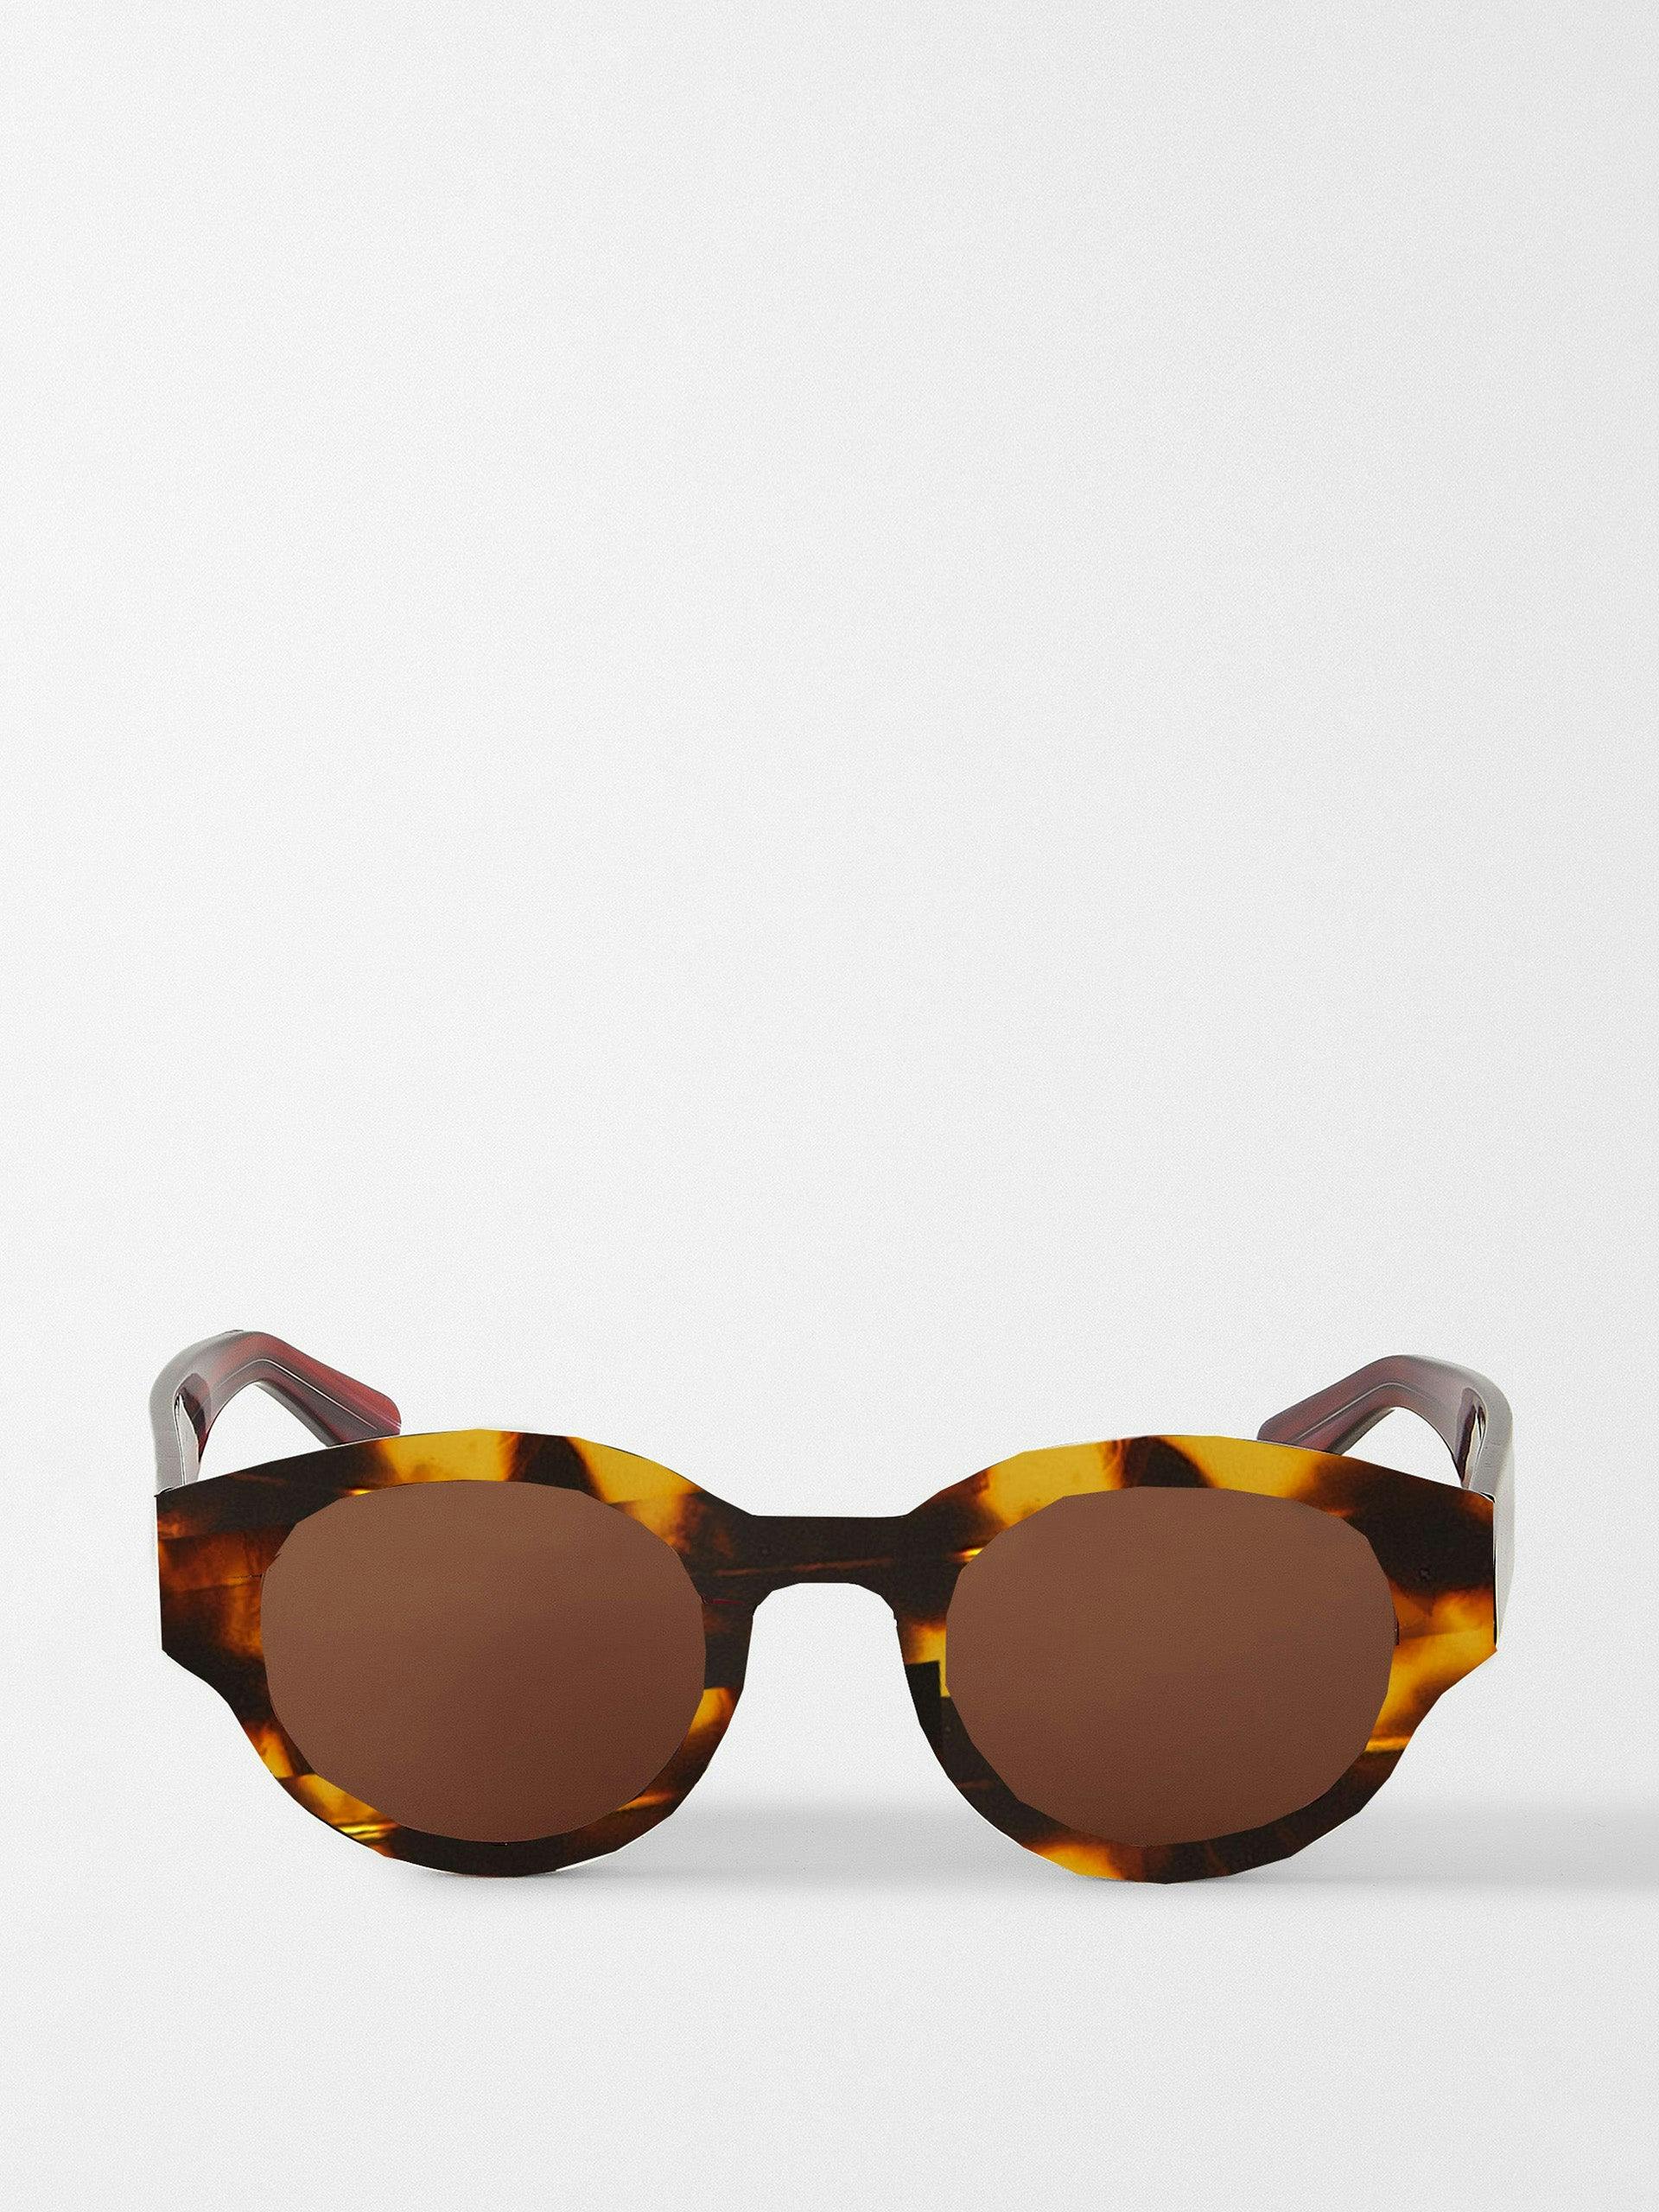 Round tortoiseshell sunglasses